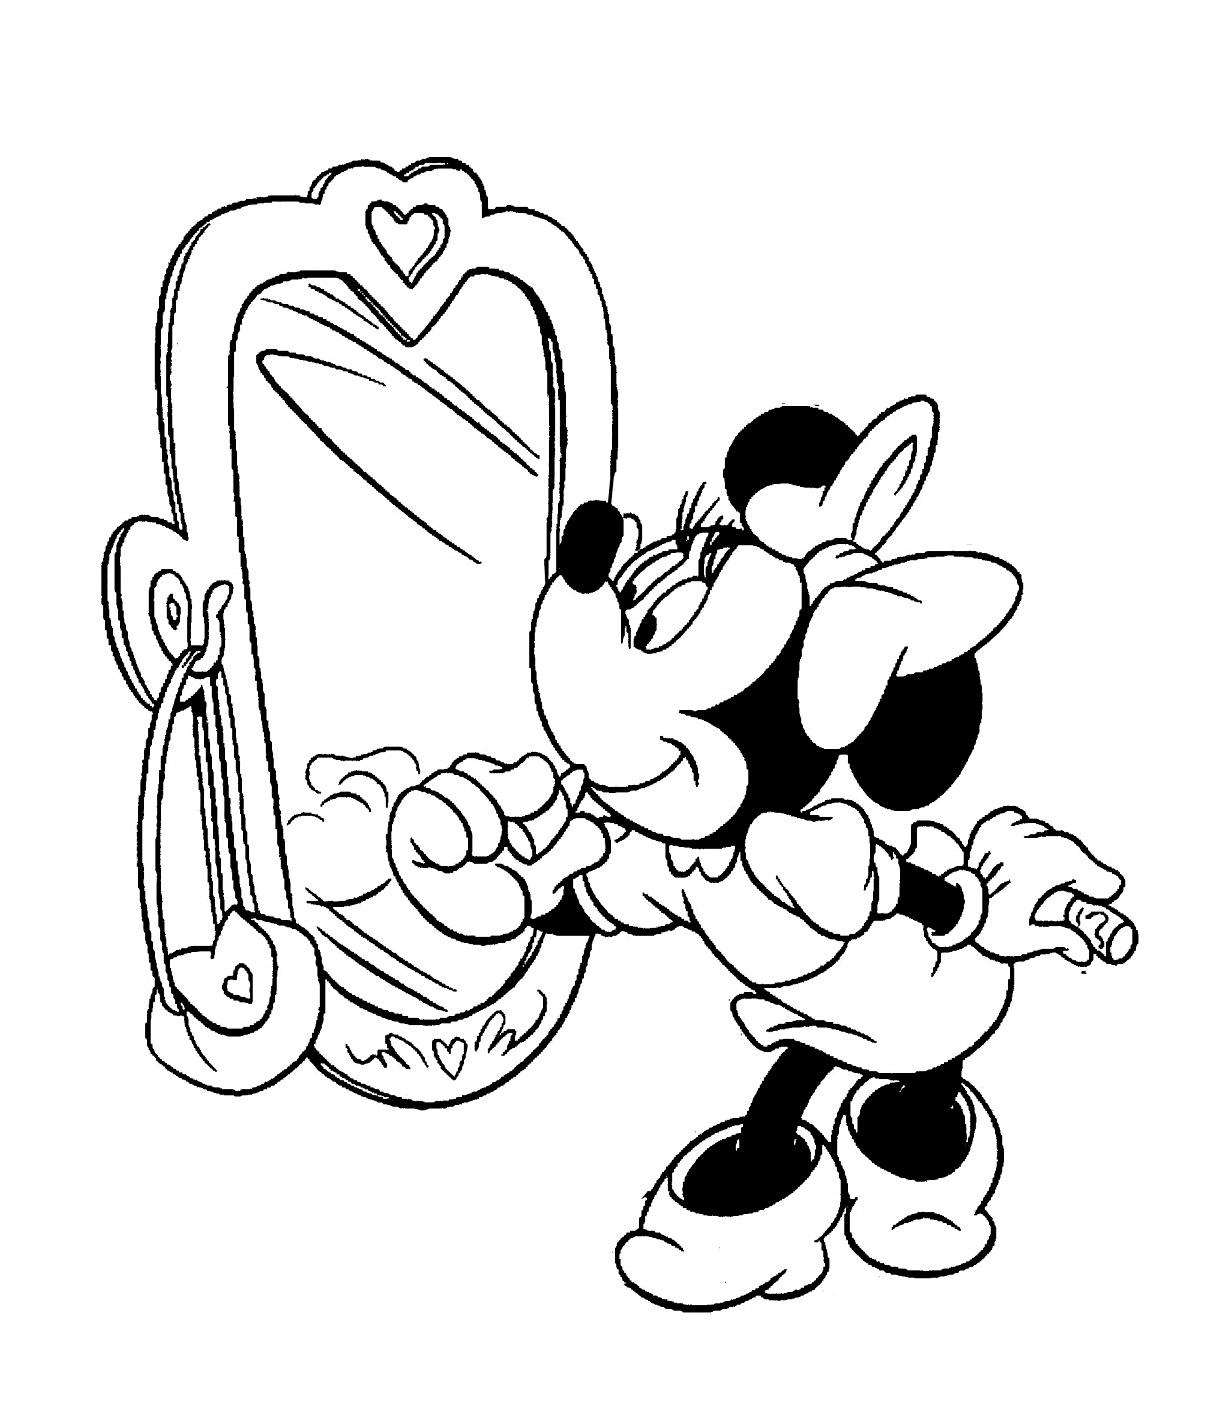 Minnie Se Regarde Dans Le Miroir - Coloriage Minnie Pour Enfants intérieur Minnie Mouse Coloriage